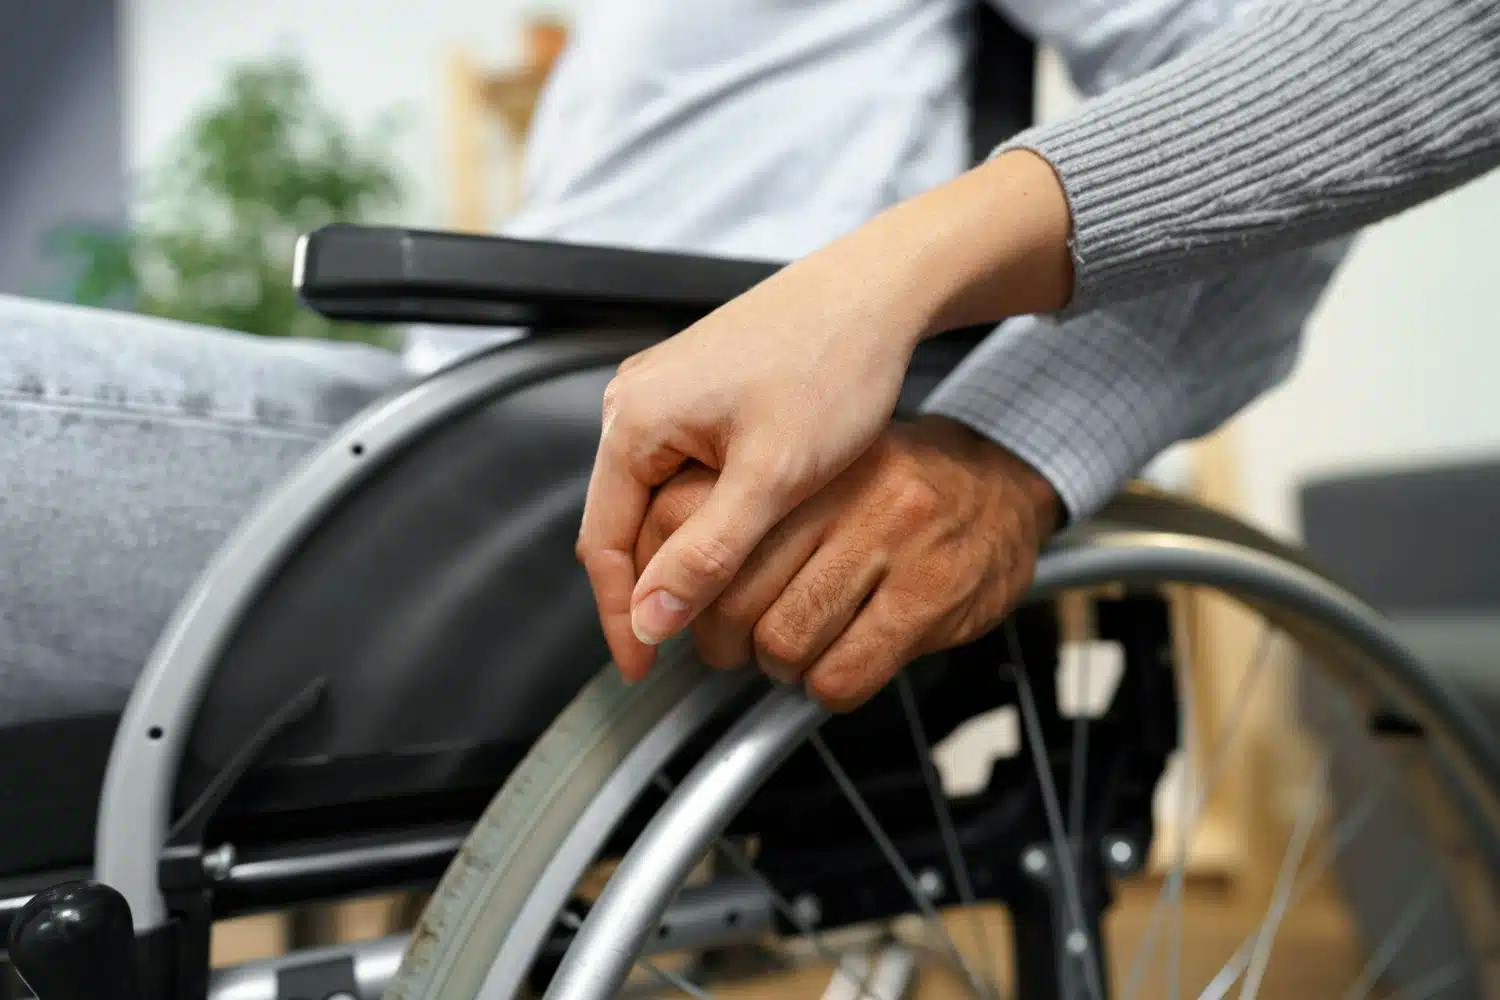 aposentadoria da pessoa com deficiência